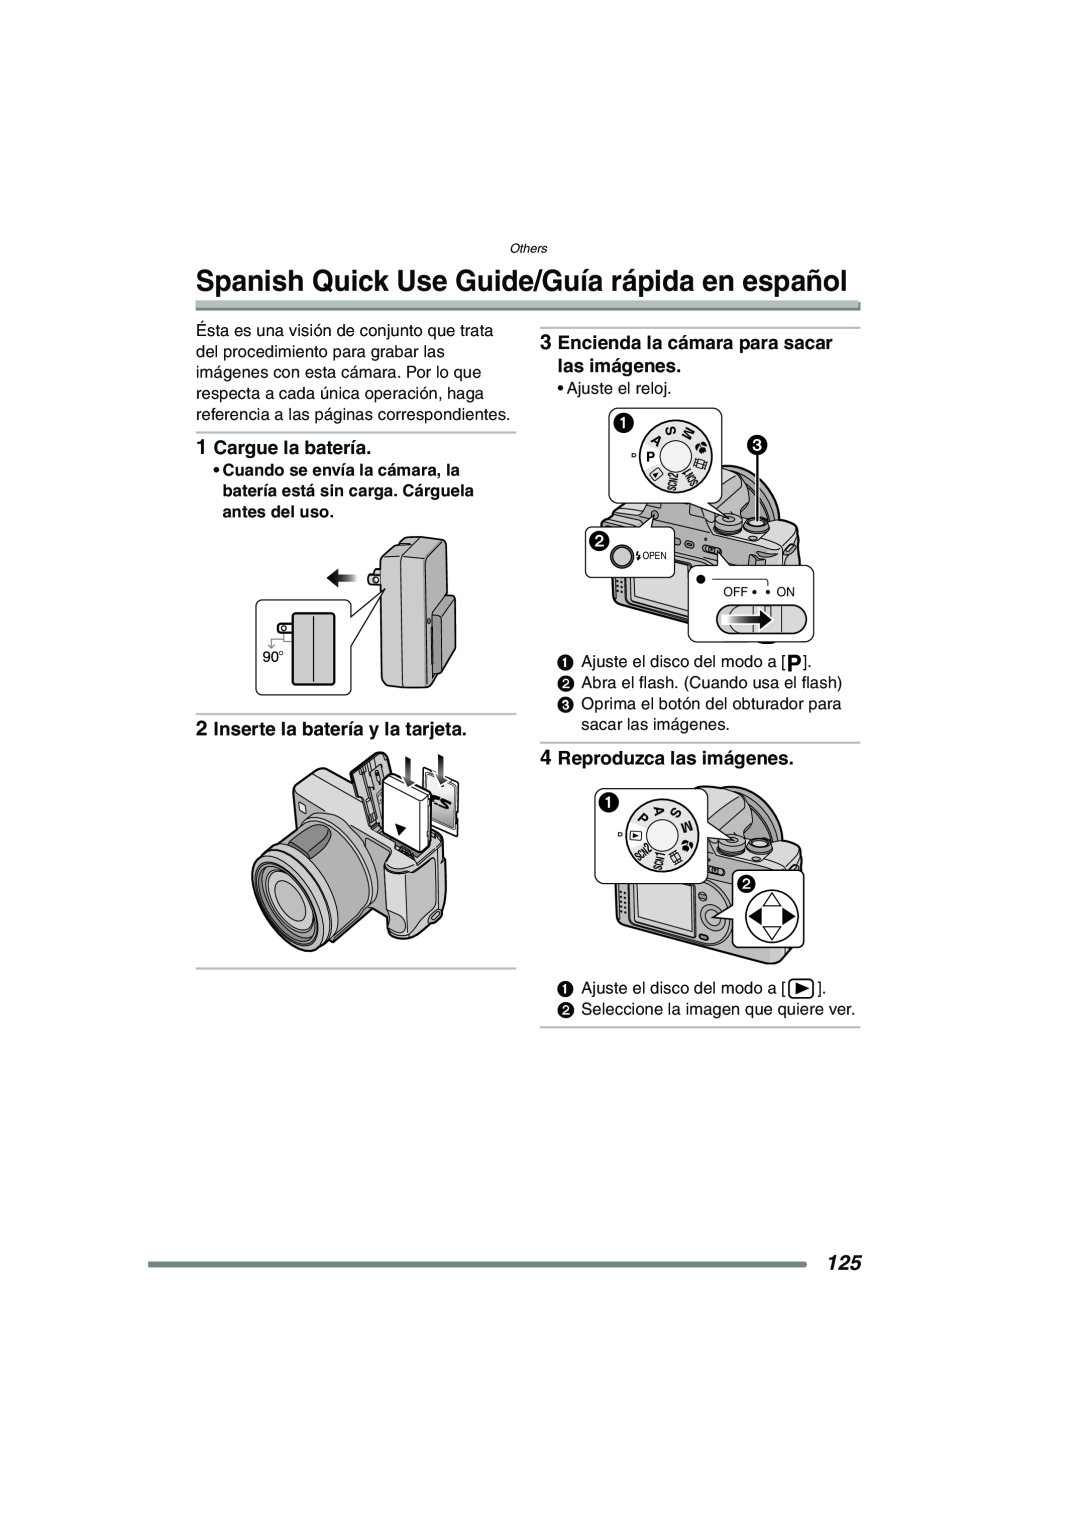 Panasonic DMC-FZ20PP Spanish Quick Use Guide/Guía rápida en español, Cargue la batería, Inserte la batería y la tarjeta 